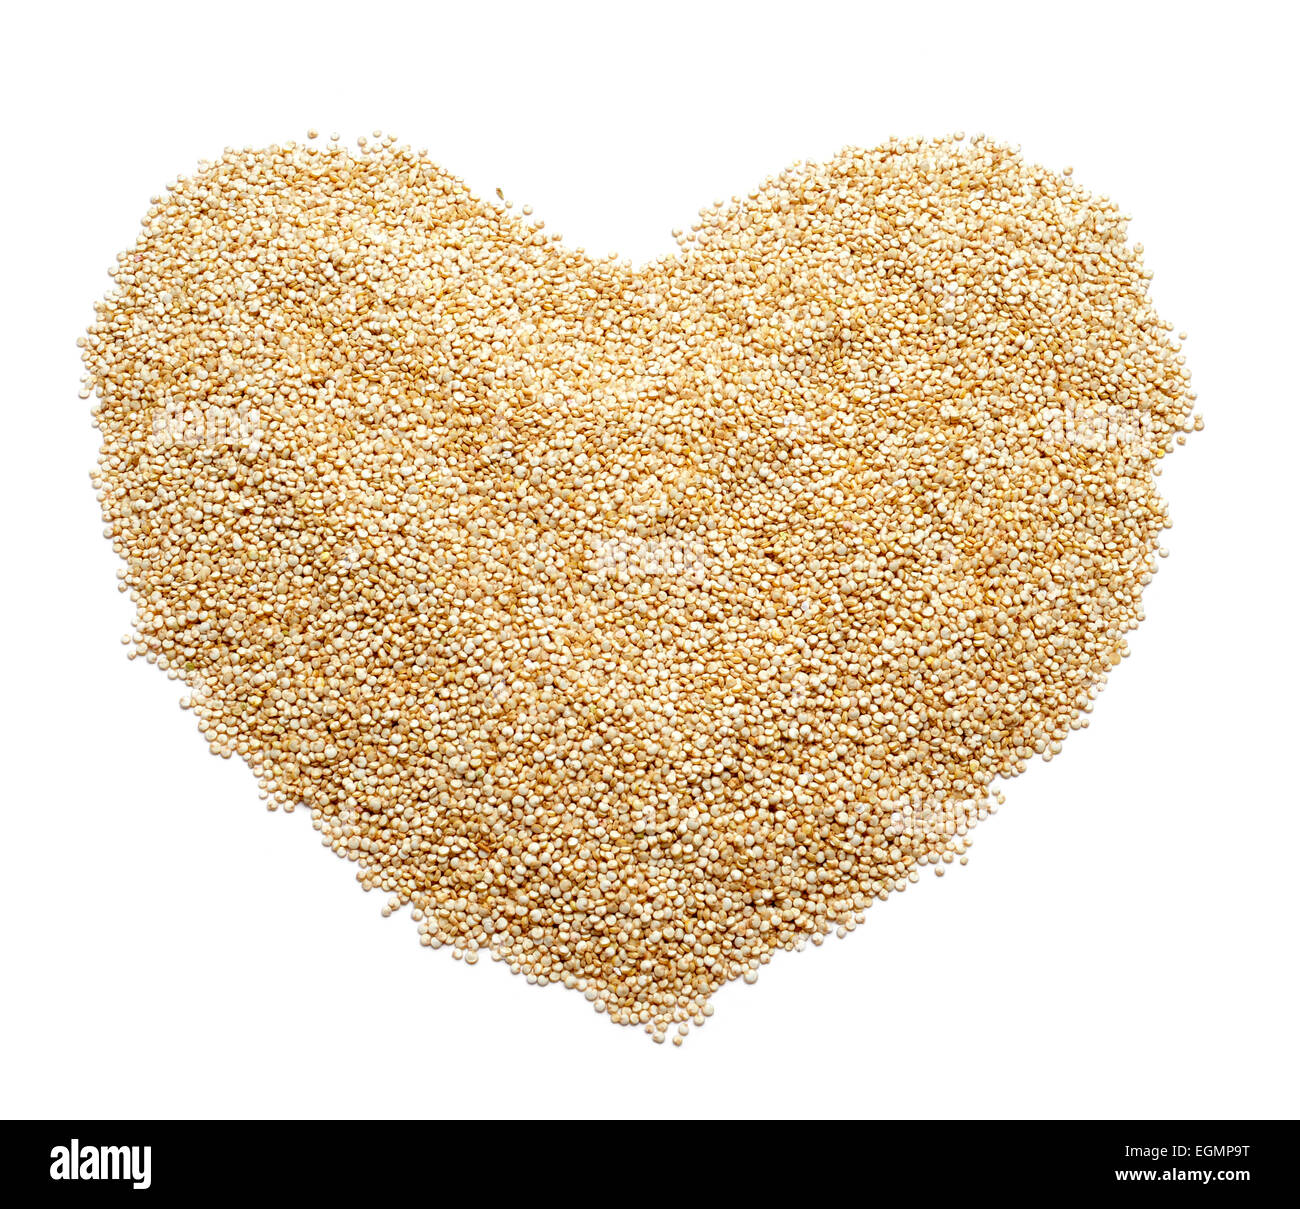 Un tas de graines de quinoa formant un coeur sur fond blanc Banque D'Images